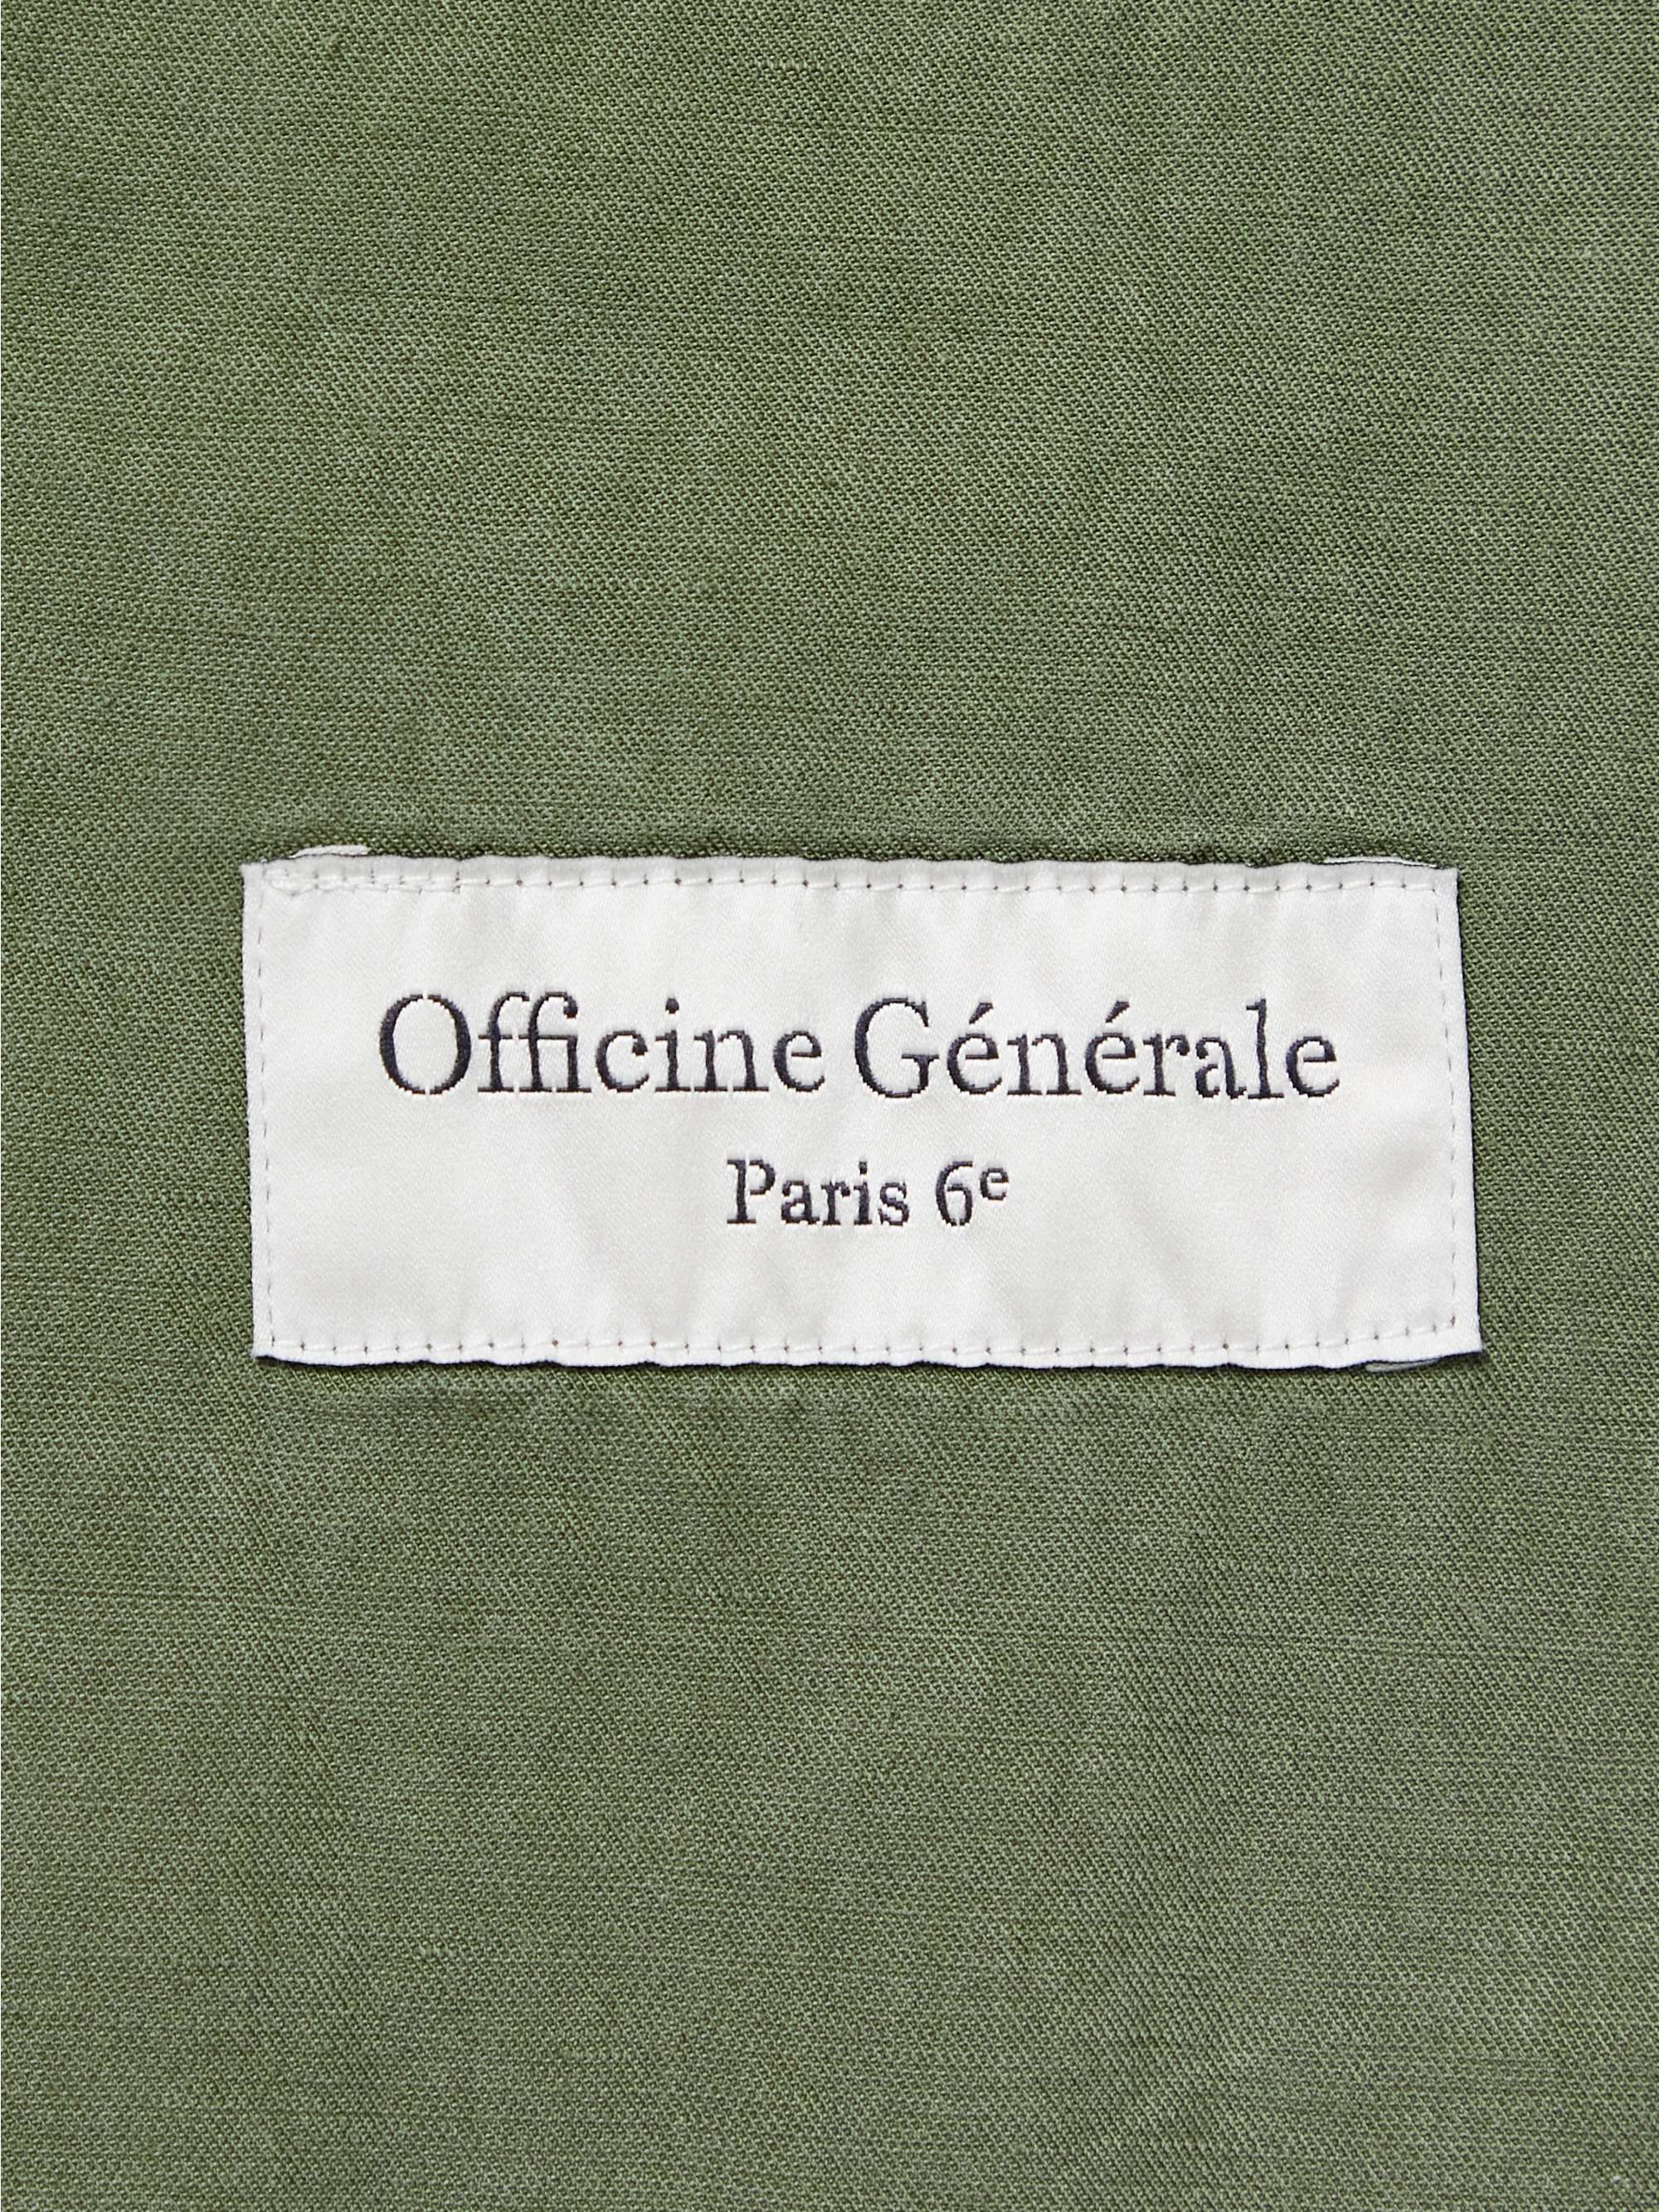 OFFICINE GENERALE Garment-Dyed TENCEL Lyocell-Blend Twill Blazer